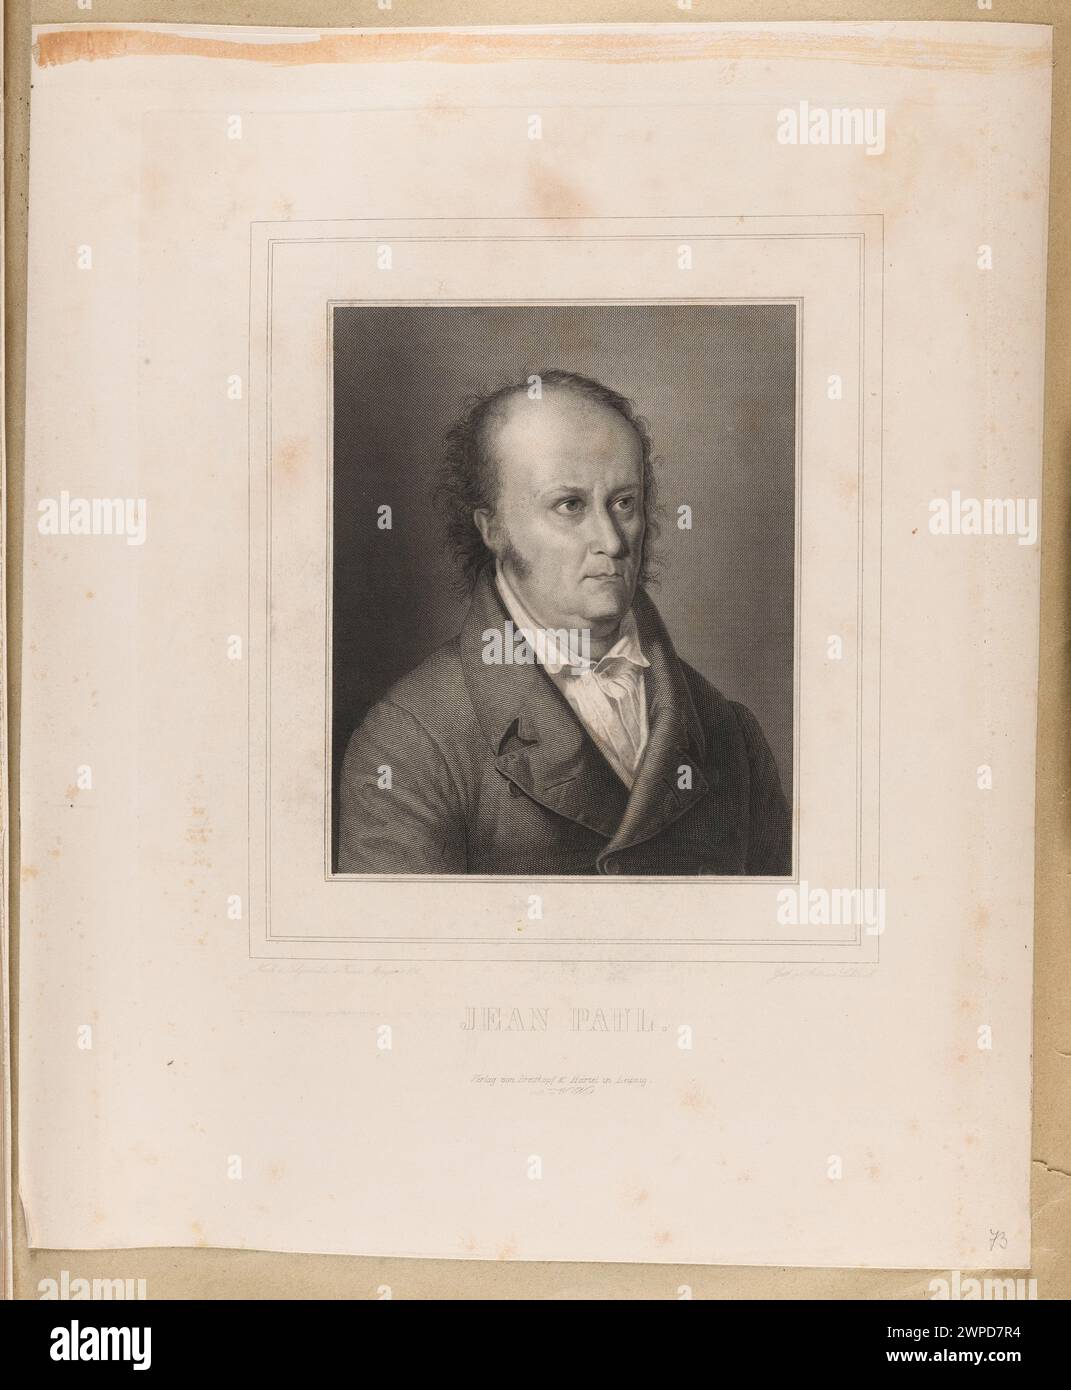 Portrait of Jean Paul; Schleich, Adrian (1812-1894), Graff, Anton (1736-1813), Wick, Wendelin (Munich; Drukarnia; Ca 1842-1860), Breitkopf & Härtel (Leipzig; Publisher; 1818-1945); 1835-1850 (1835-00-00-1850-00-00); Stock Photo